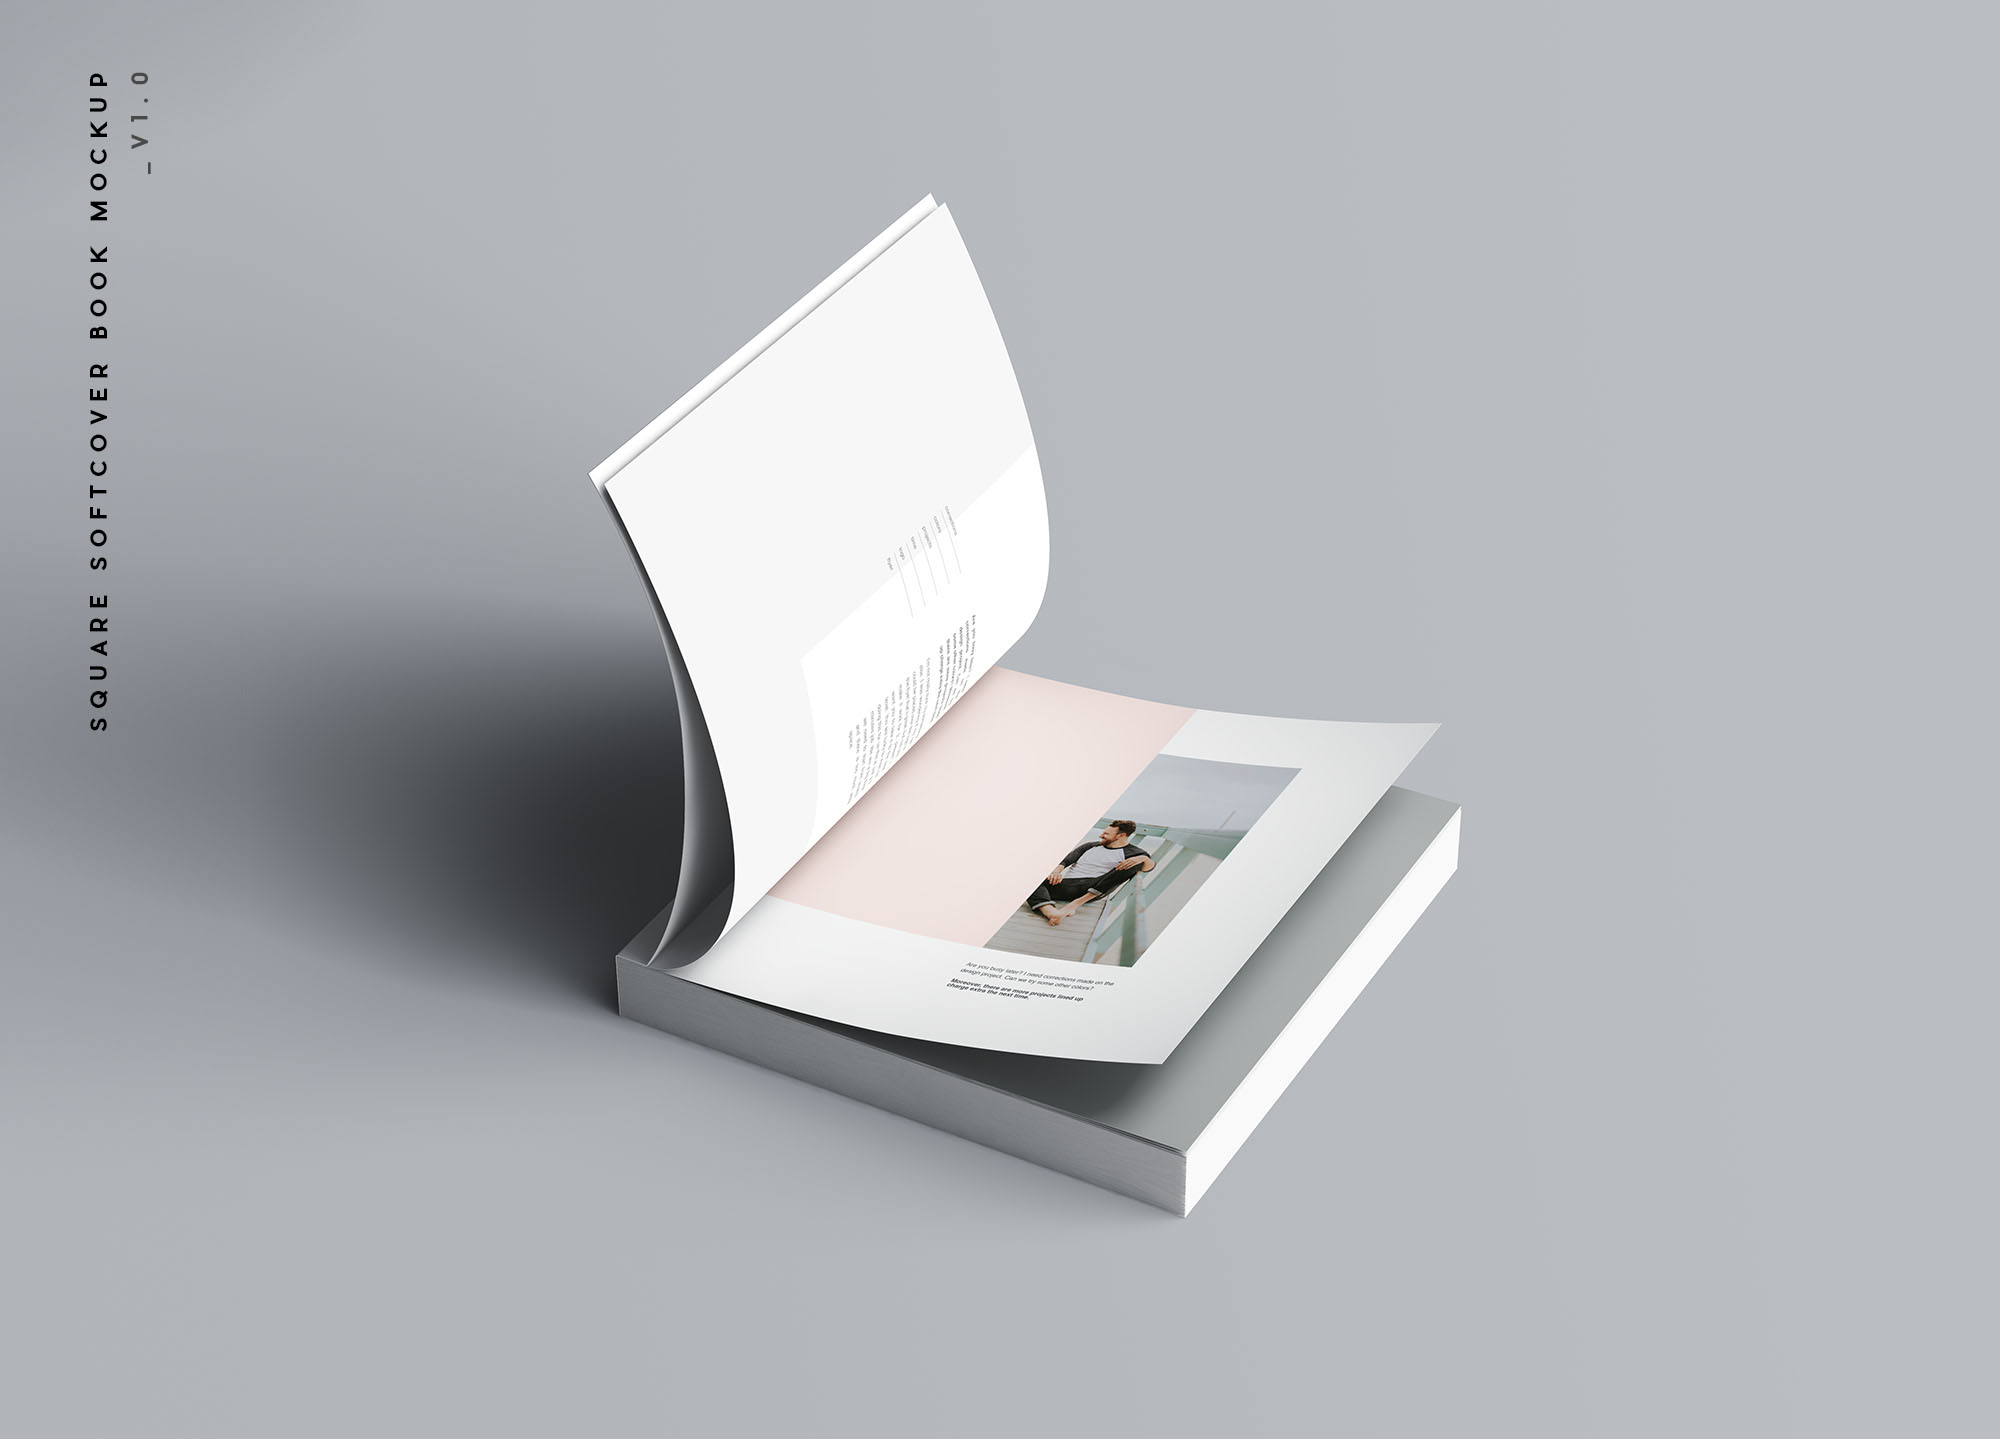 方形软封图书内页版式设计效果图样机蚂蚁素材精选 Square Softcover Book Mockup插图